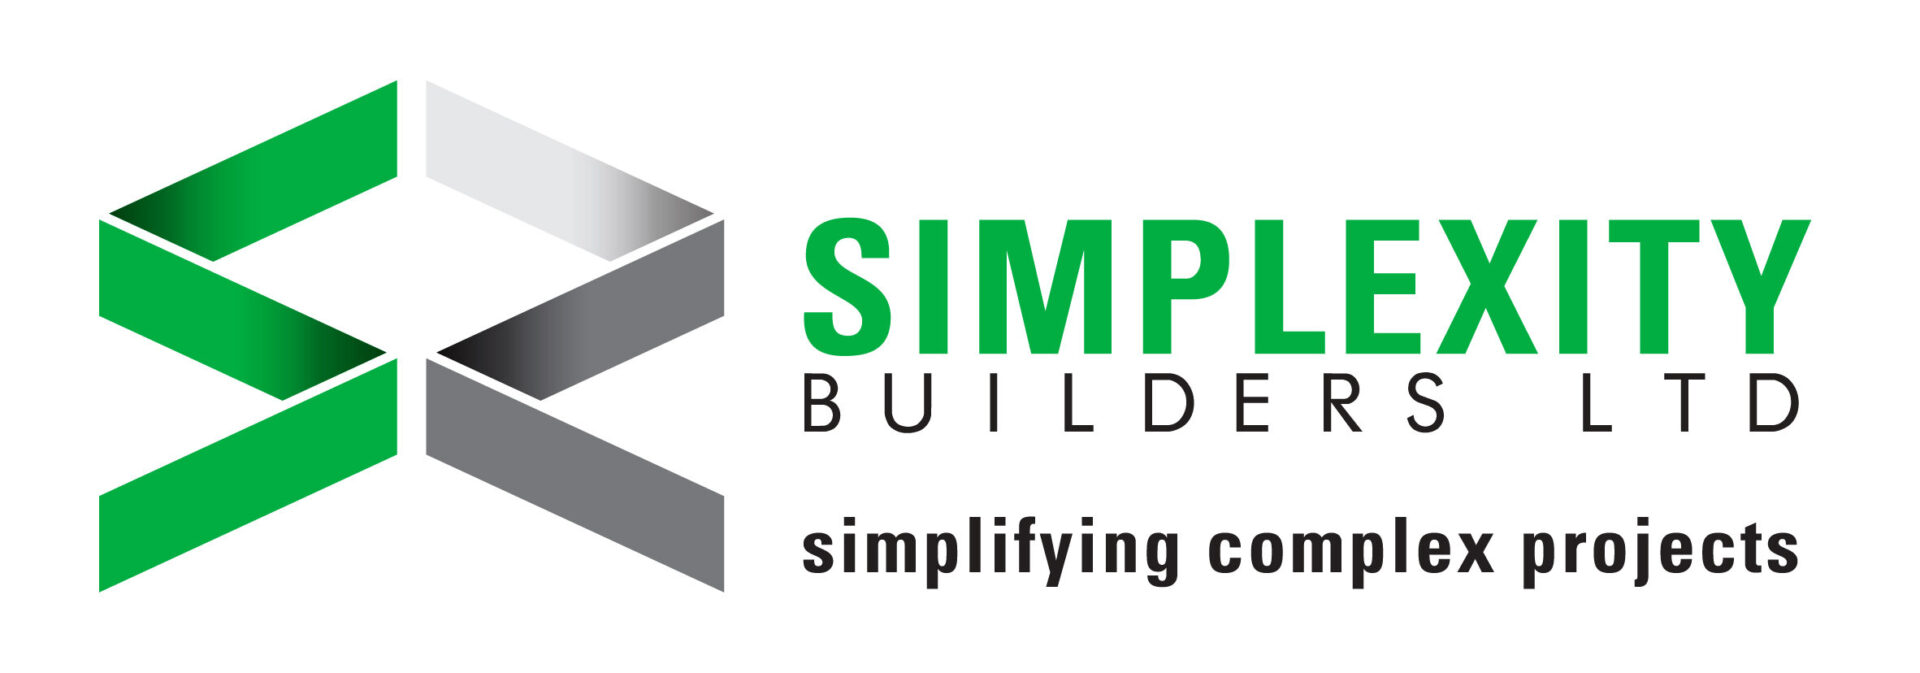 Simplexity Builders Ltd